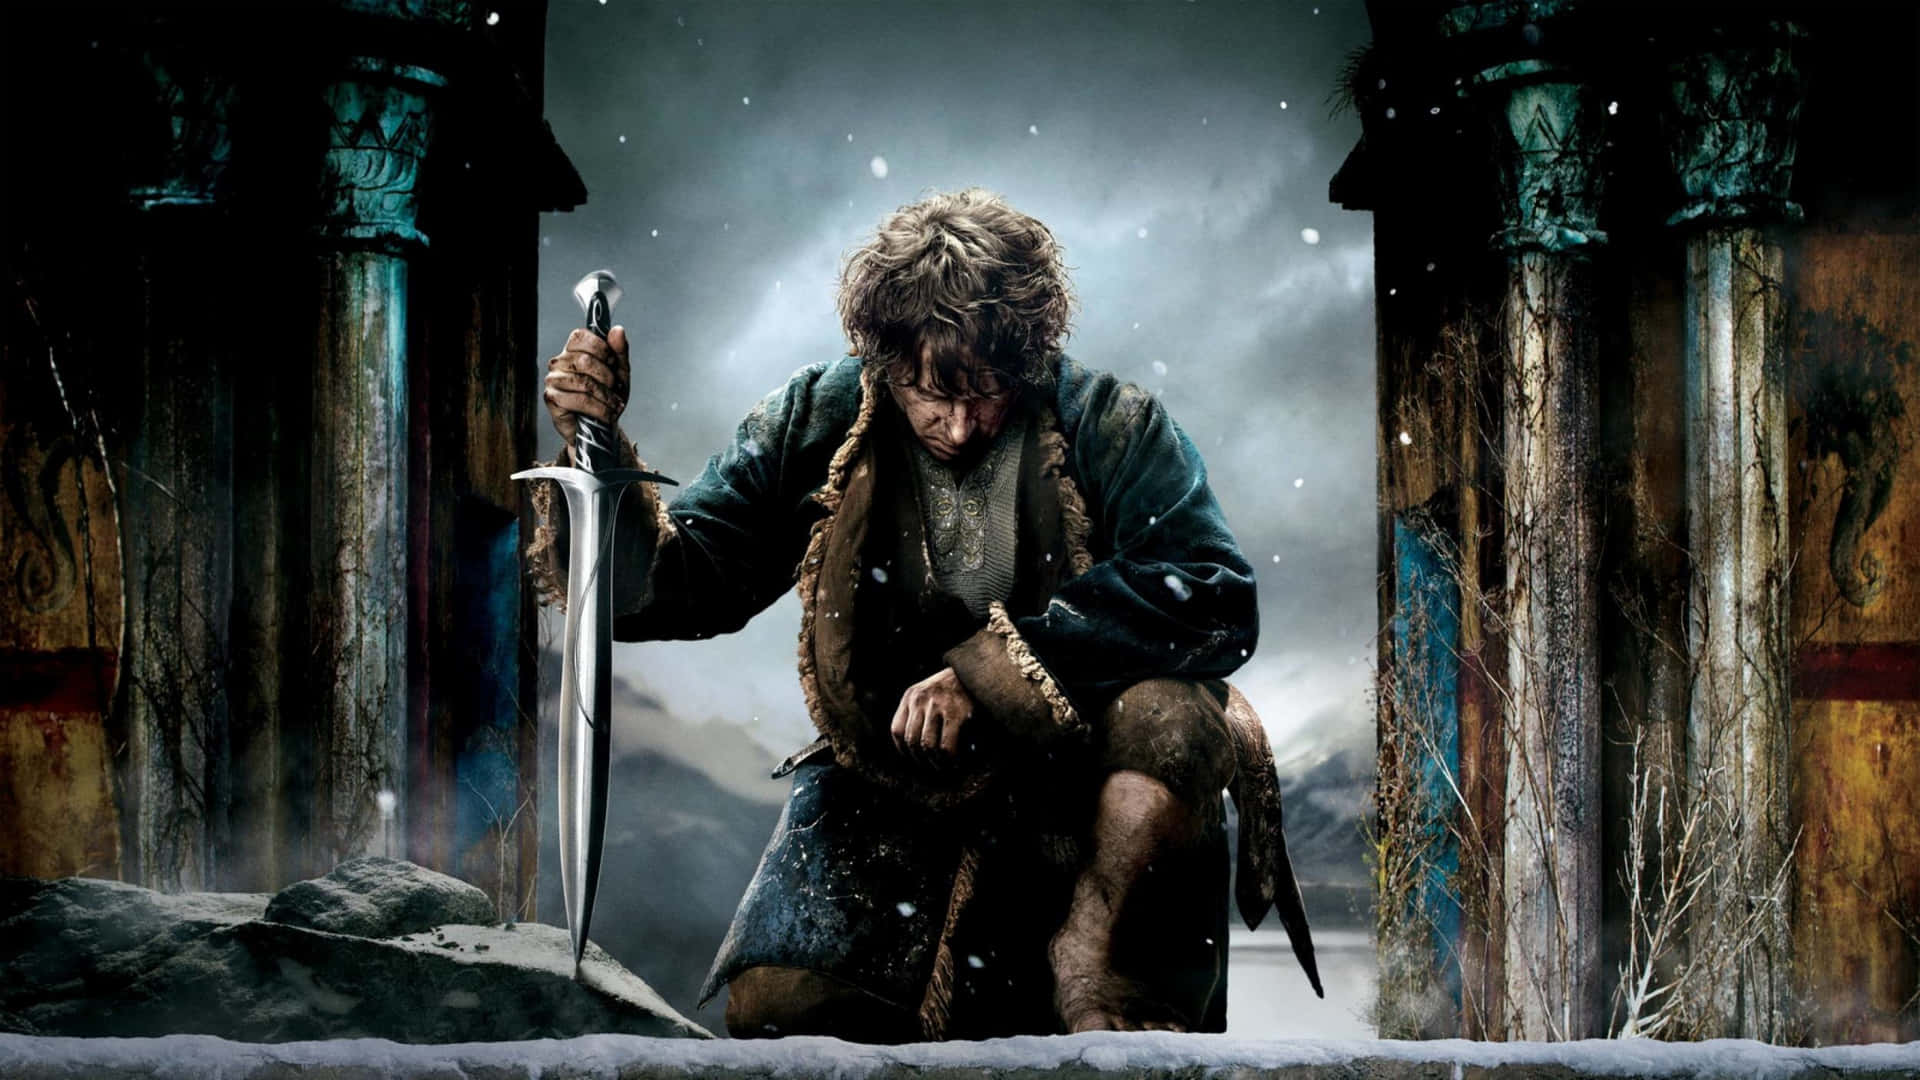 The Hobbit Heroic Pose Wallpaper